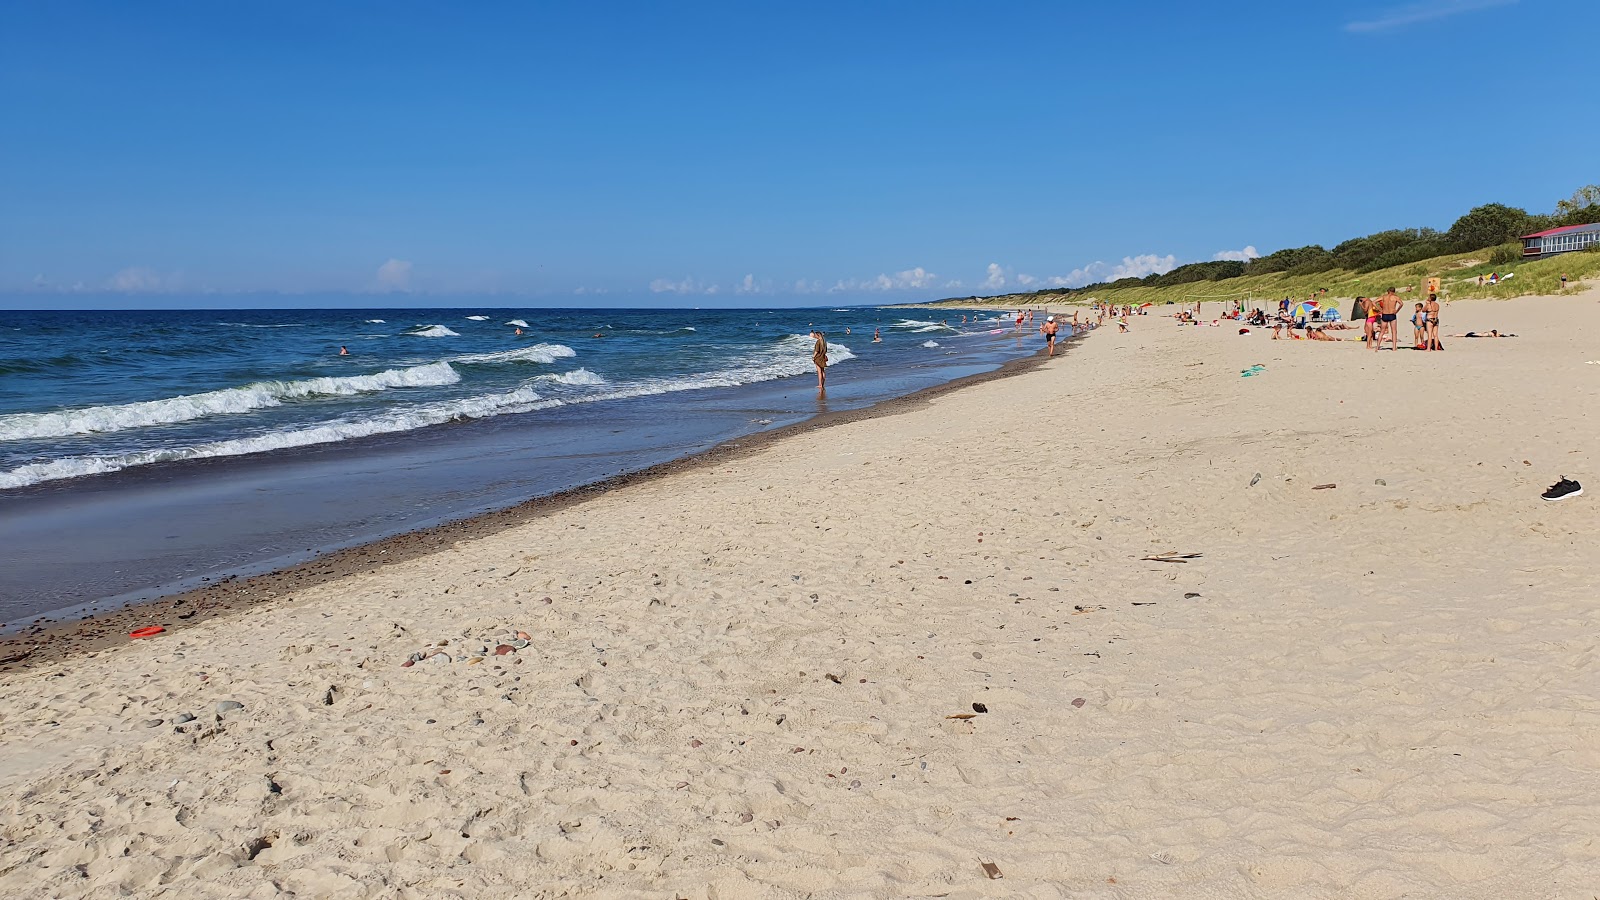 Moryachka beach'in fotoğrafı parlak kum yüzey ile